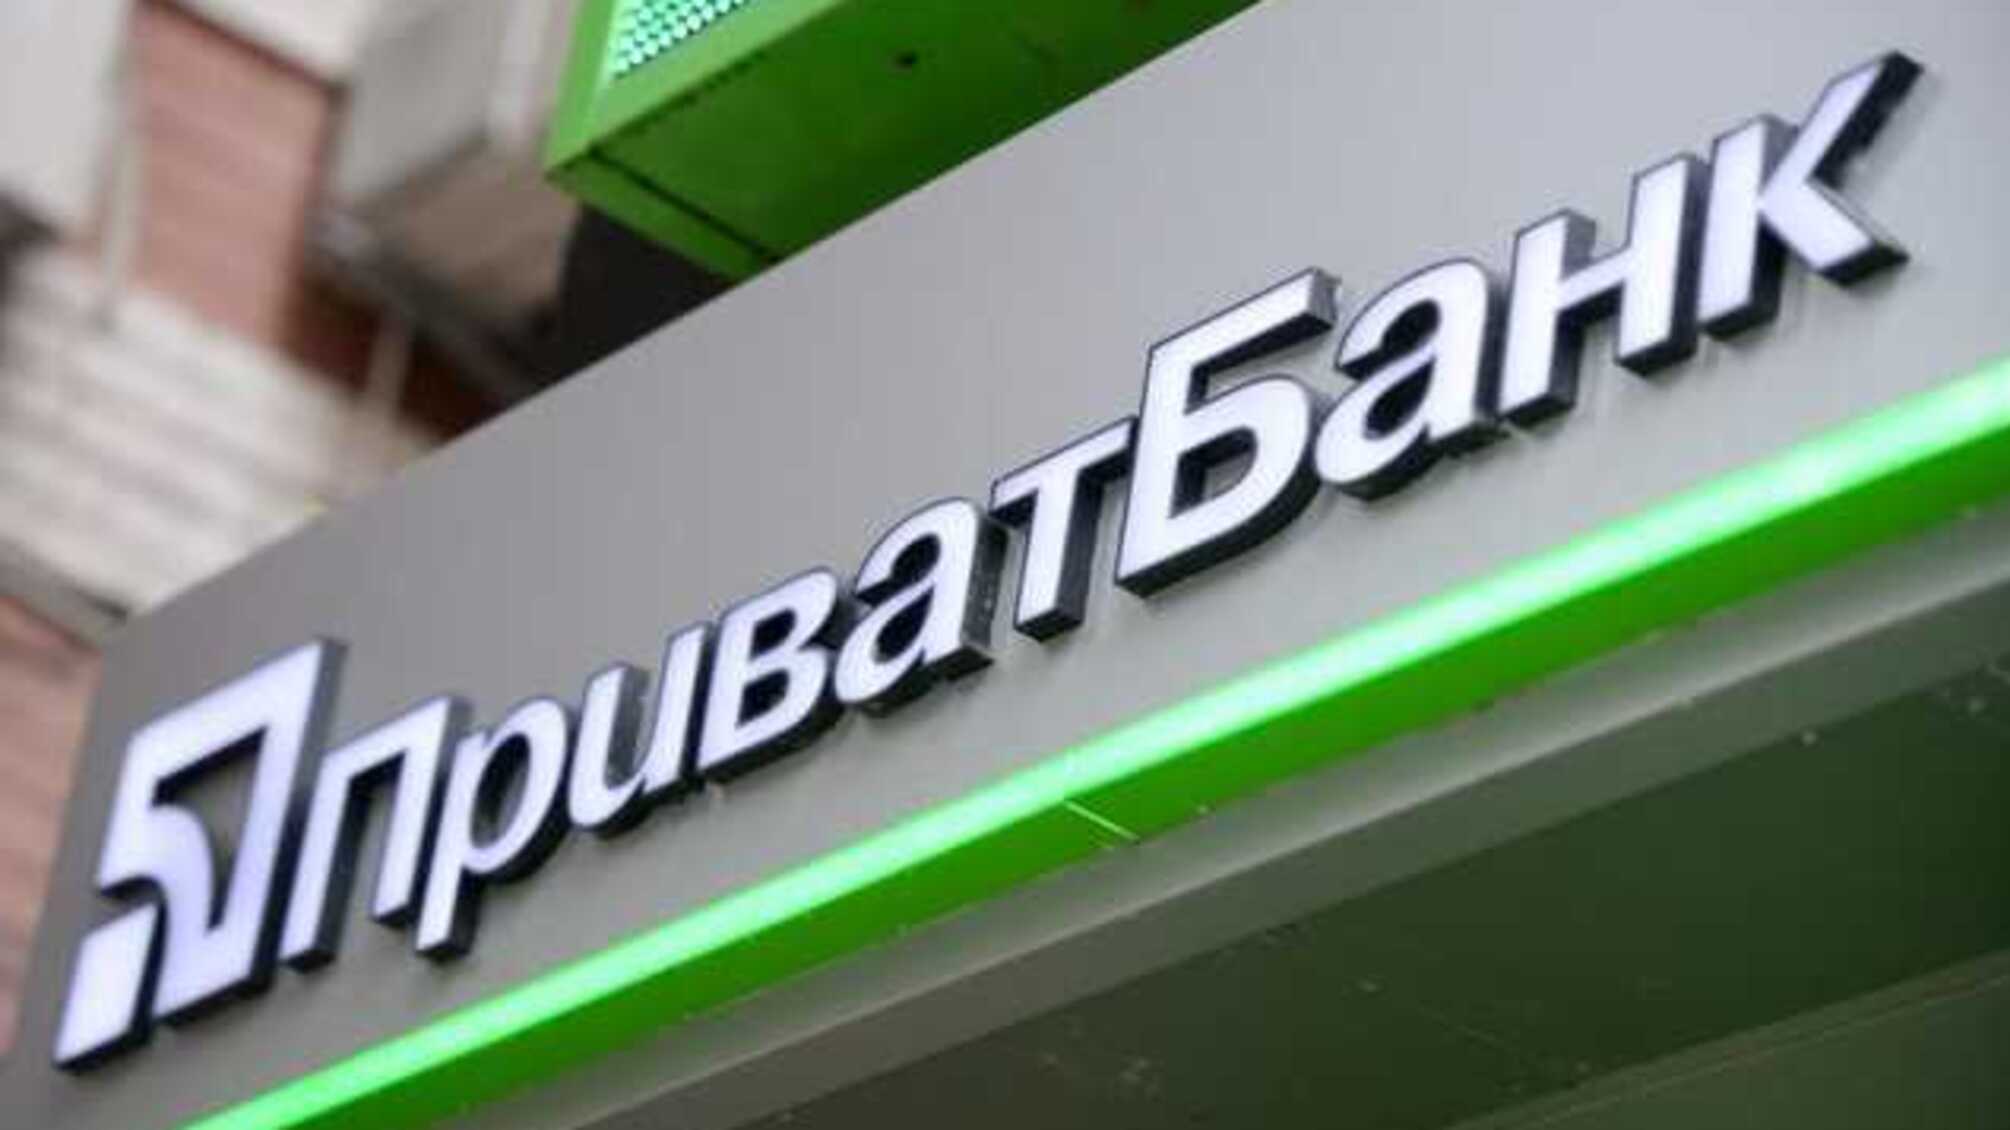 “Приватбанк” выплатил заводу Коломойского 21,8 млн по решению суда